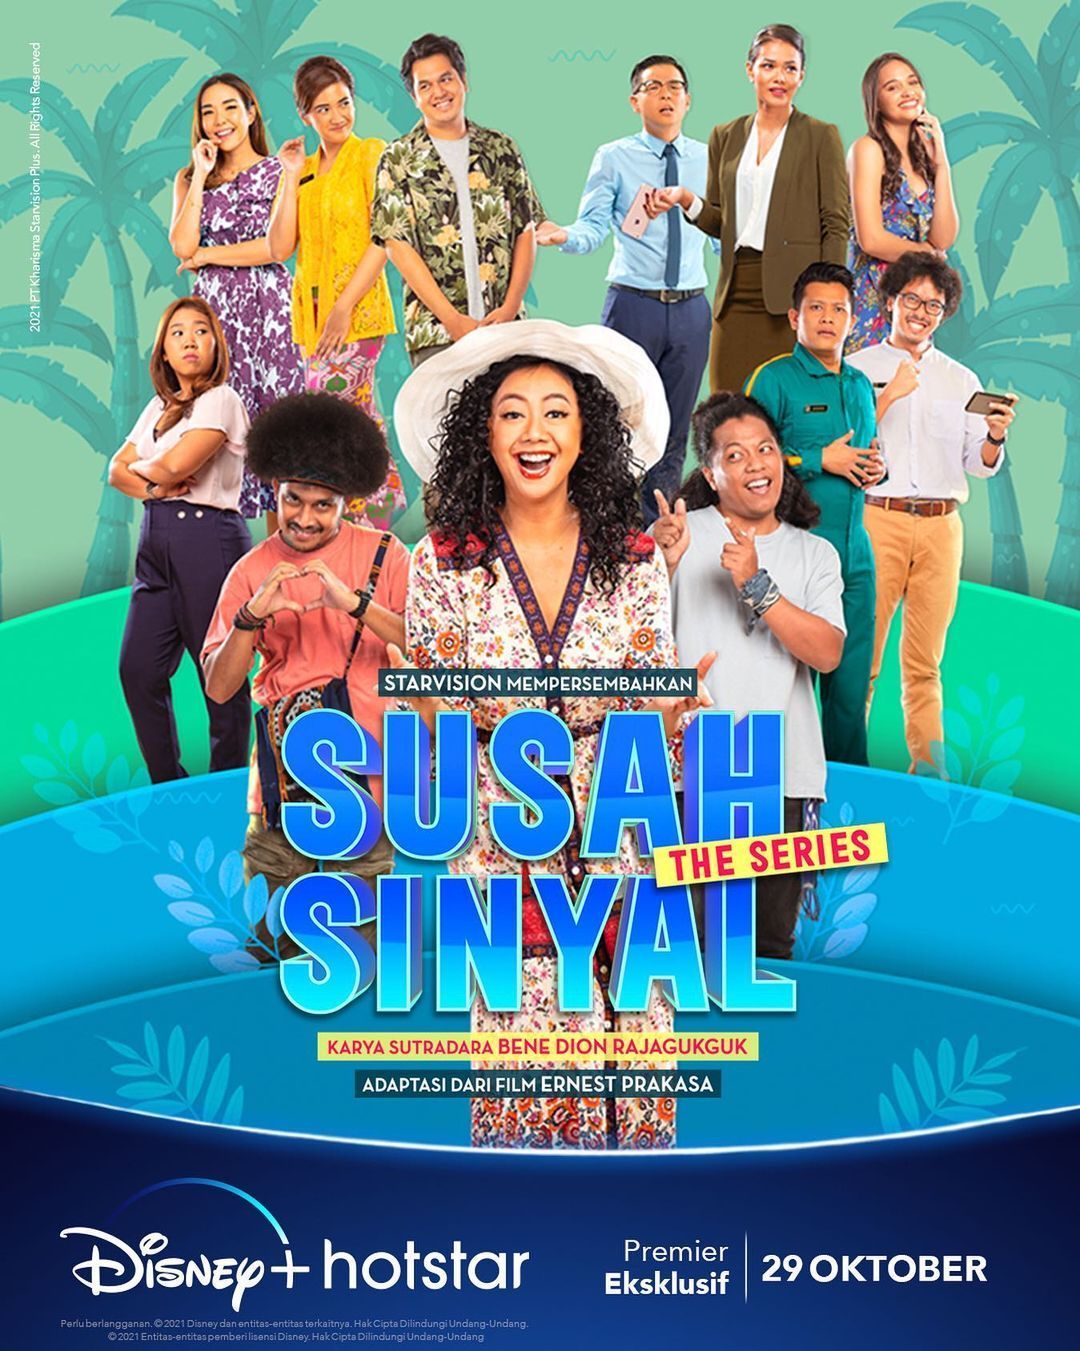 TV ratings for Susah Sinyal: The Series in Brazil. Disney+ TV series